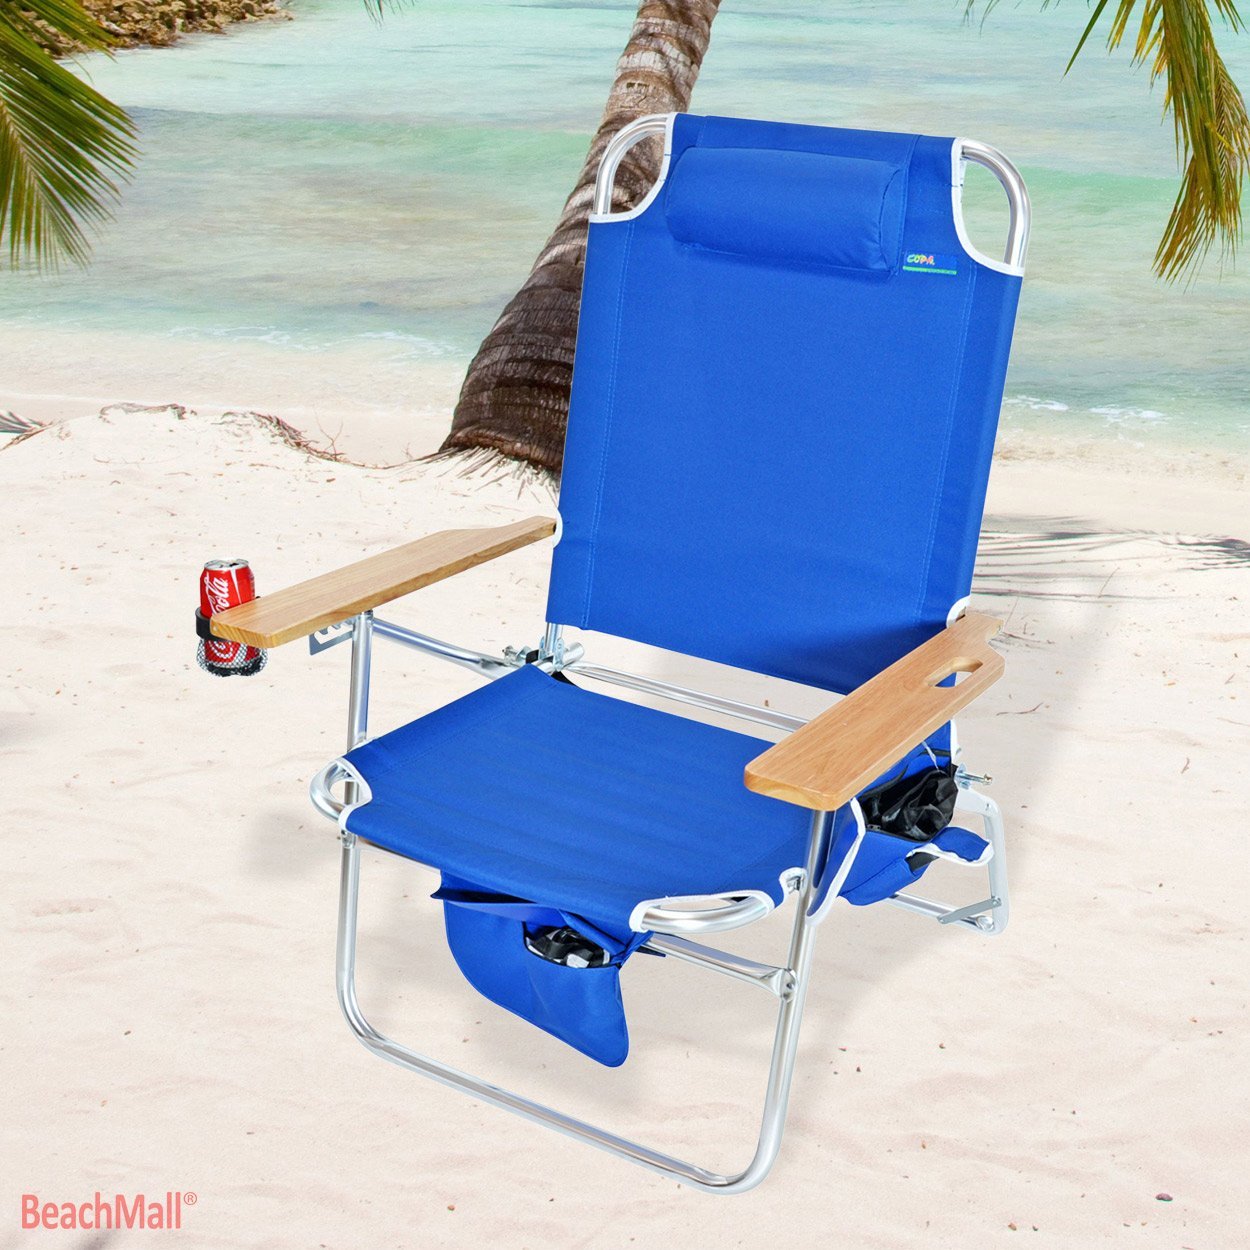 Best Beach Chair For Heavy Person 500 Lbs Xl Beach Chair Review Seaside Wisdom Beach Chairs